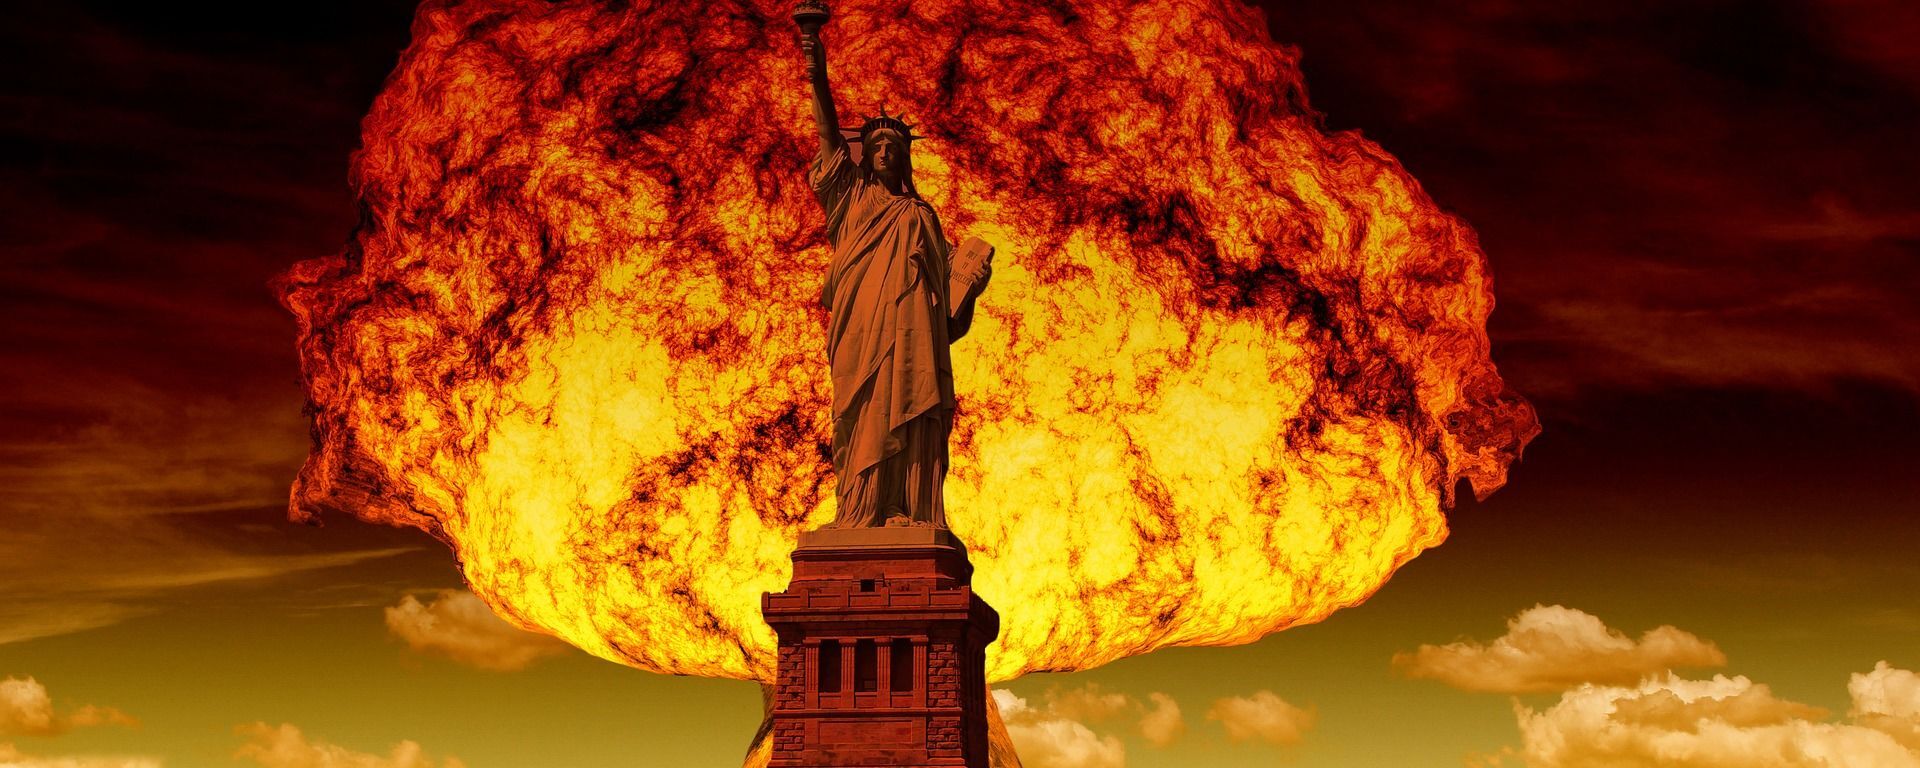 Vụ nổ hạt nhân trước tượng Nữ thần Tự do ở New York - Sputnik Việt Nam, 1920, 03.02.2021